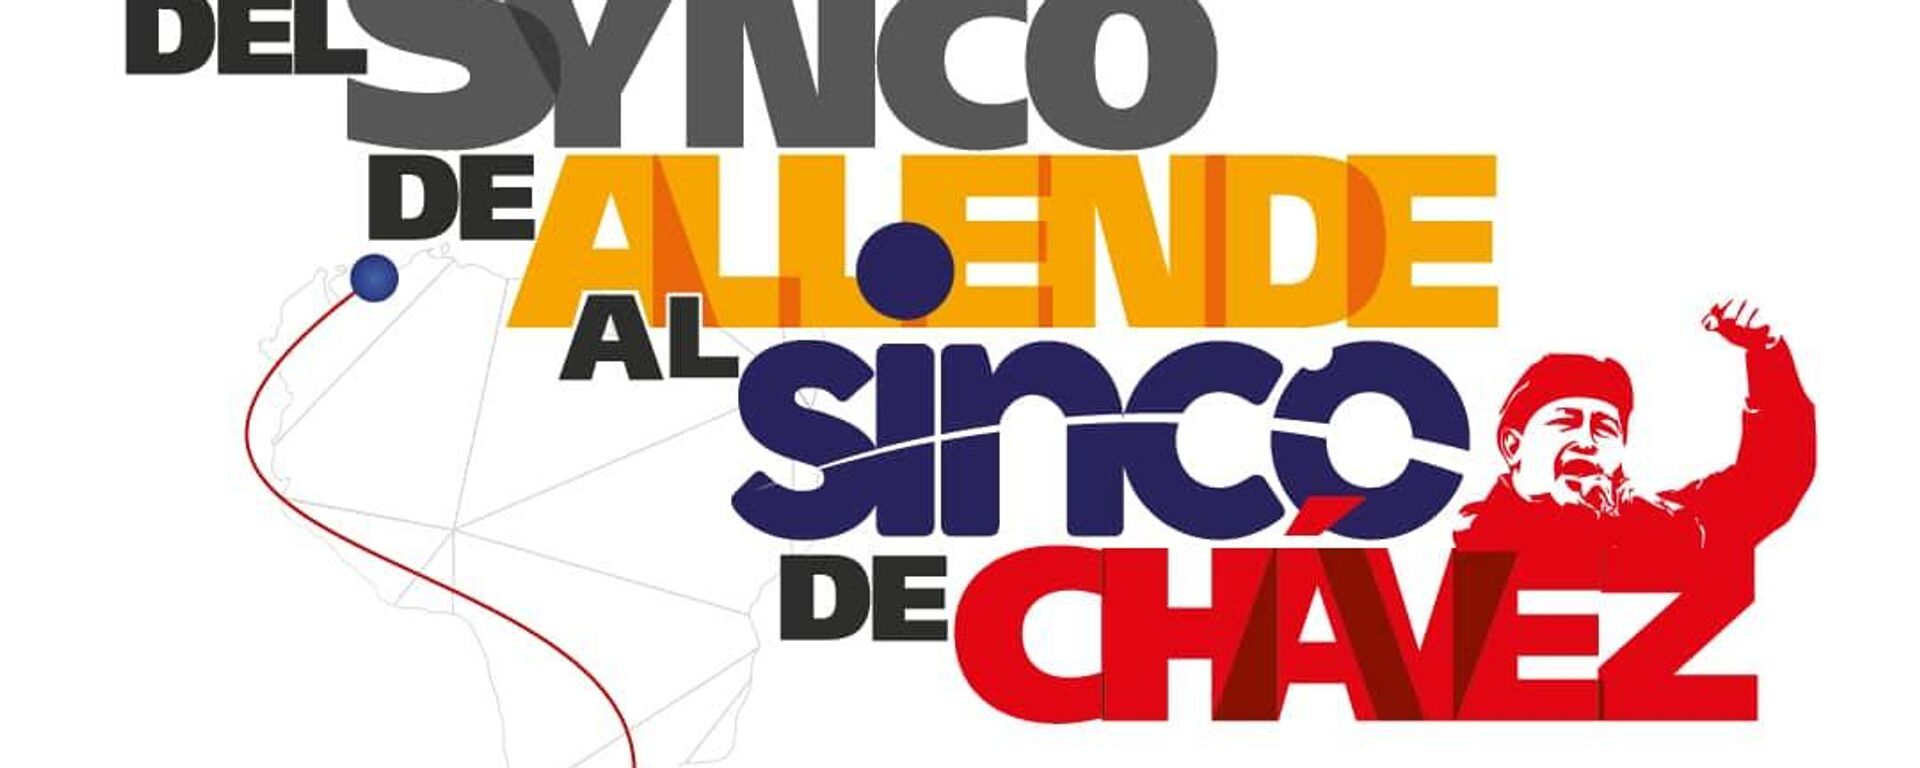 El lema del SINCO, el proyecto digital de Venezuela - Sputnik Mundo, 1920, 15.04.2021